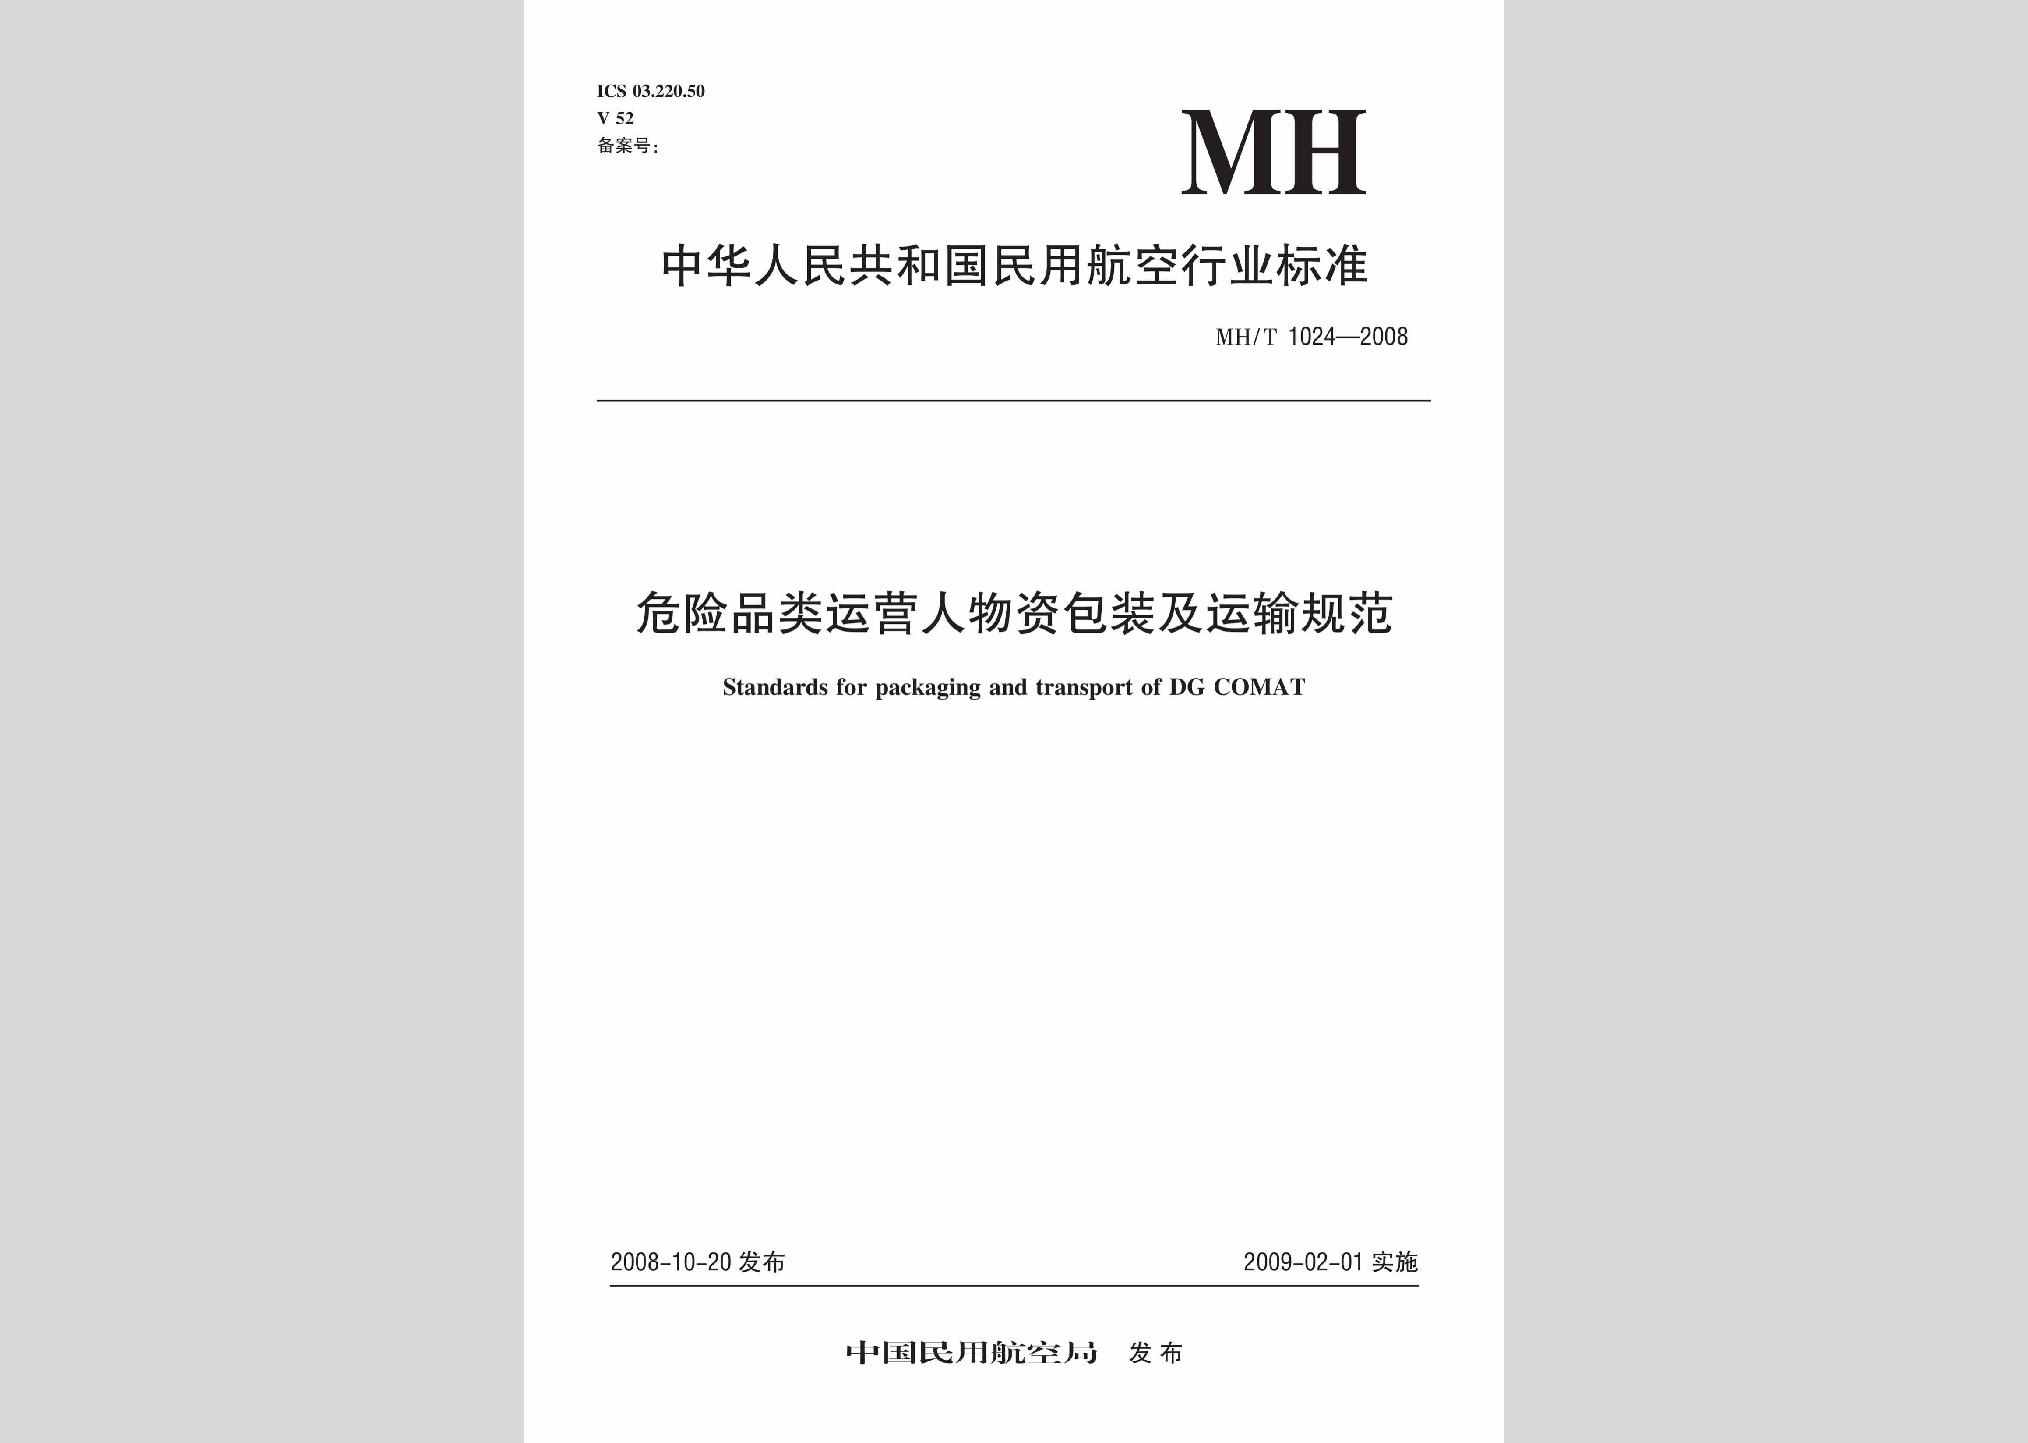 MH/T1024-2008：危险品类运营人物资包装及运输规范